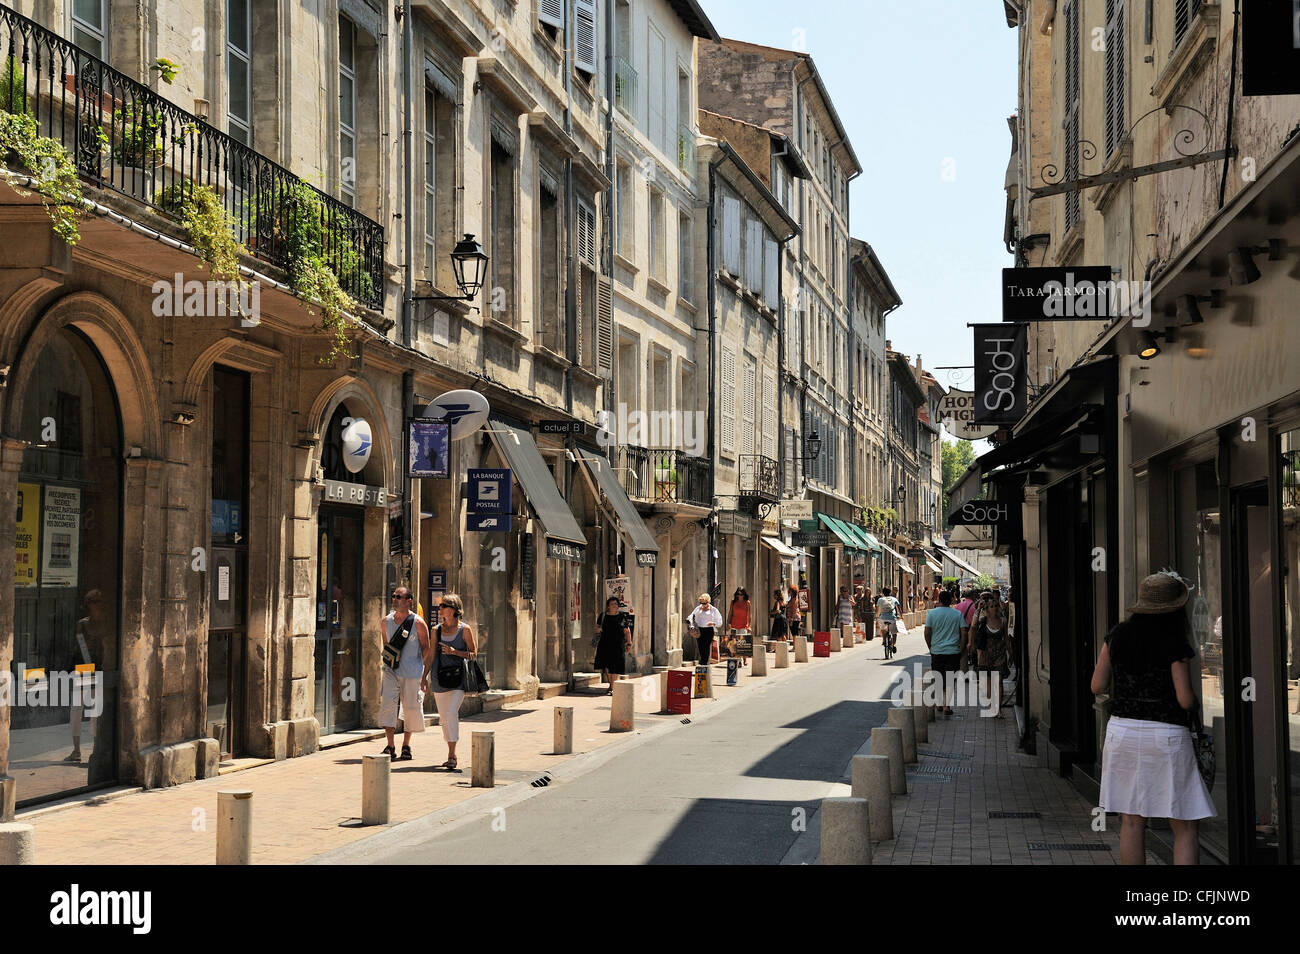 L'une des principales rues commerçantes, Avignon, Provence, France, Europe Banque D'Images